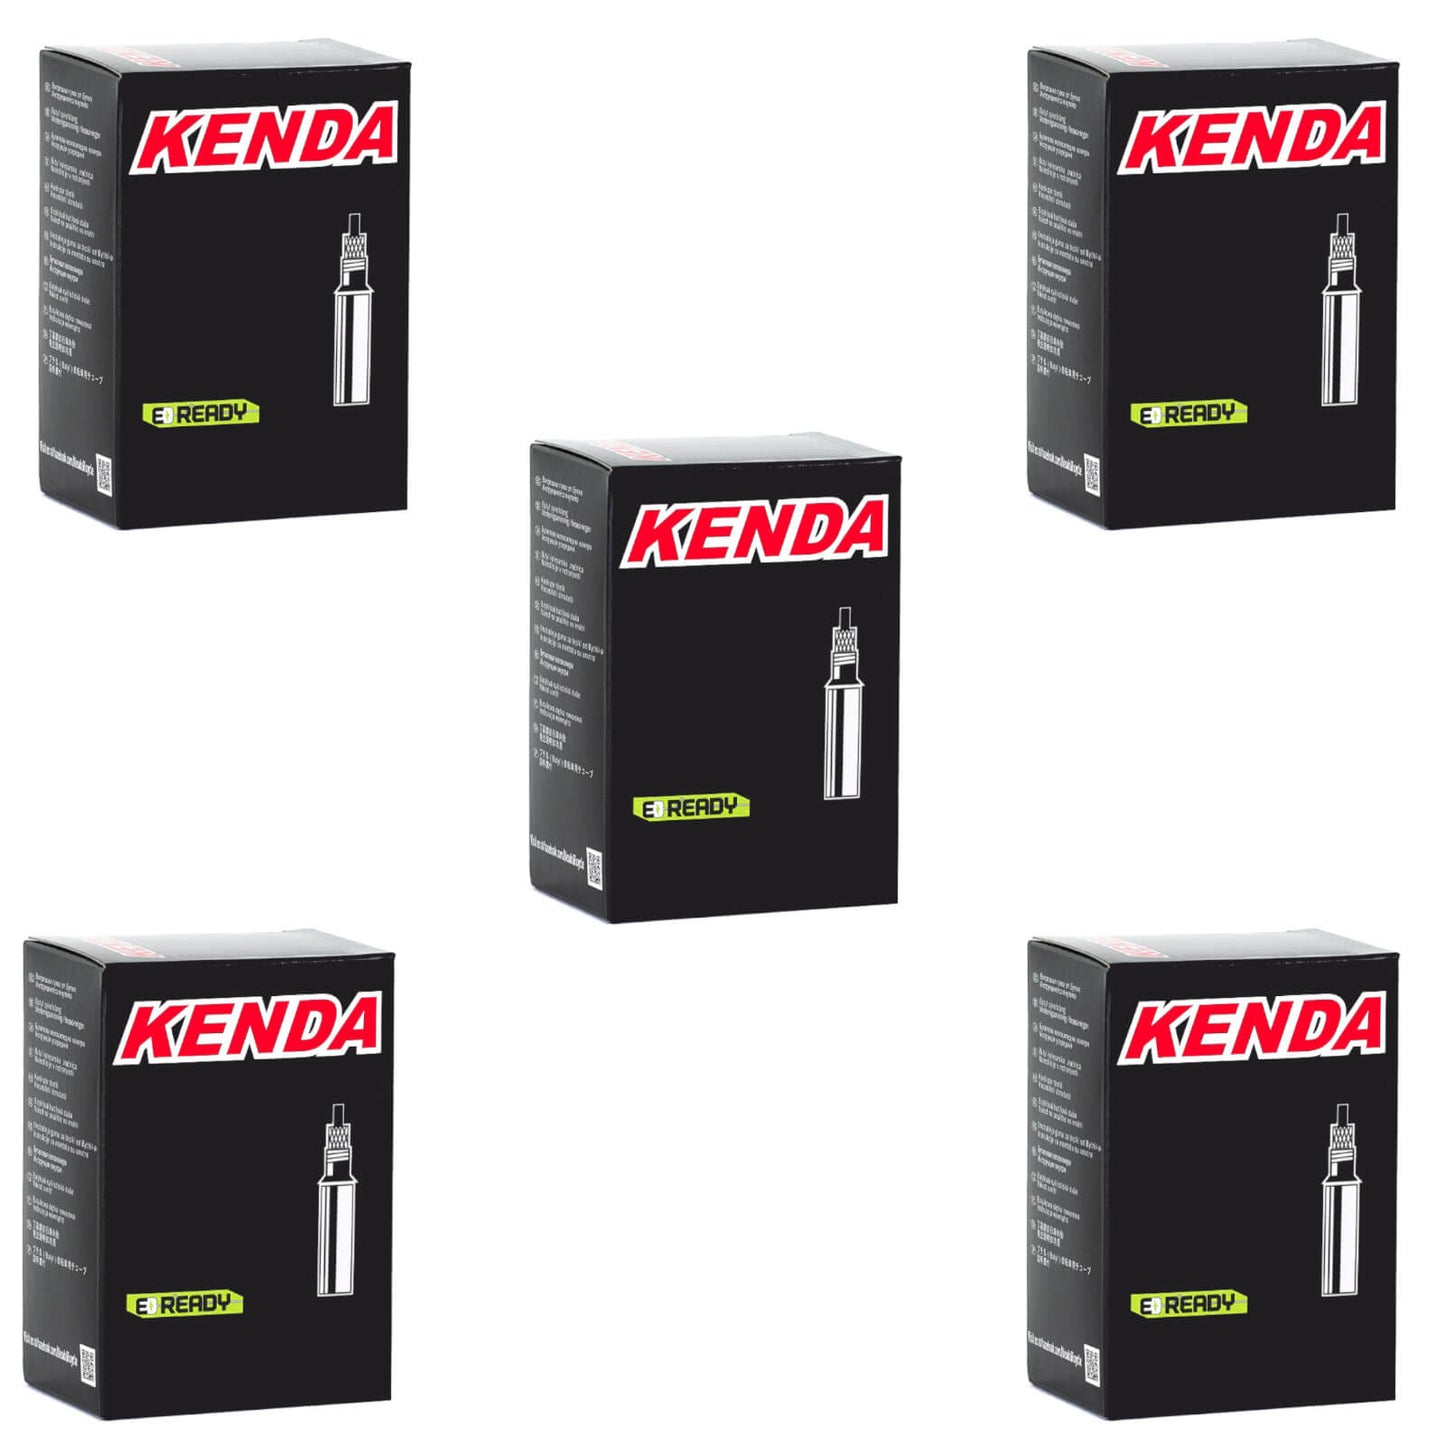 Kenda 700x30-43c 700c Presta Valve Bike Inner Tube Pack of 5